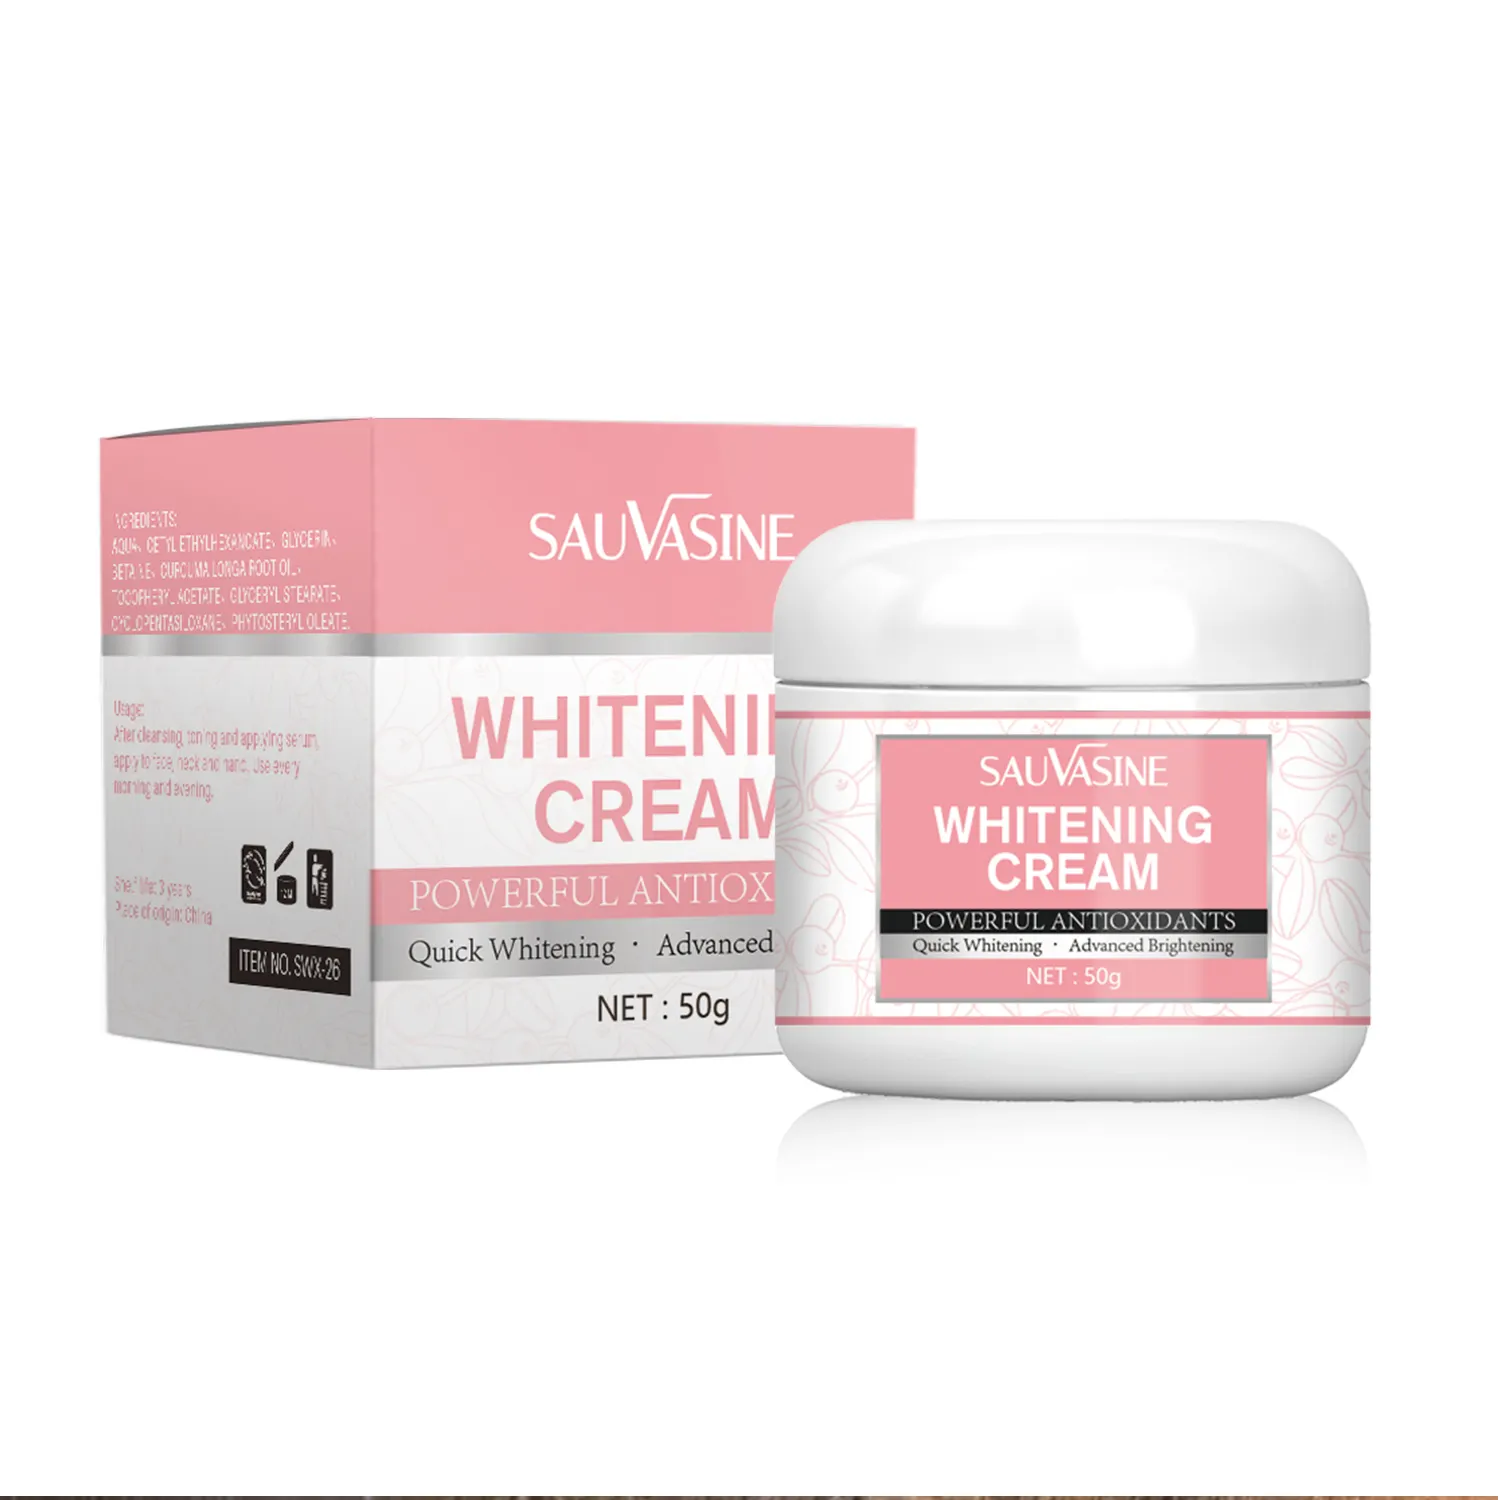 Powerful Antioxidants Quick Whitening Advanced Brightening Whitening Cream 50g